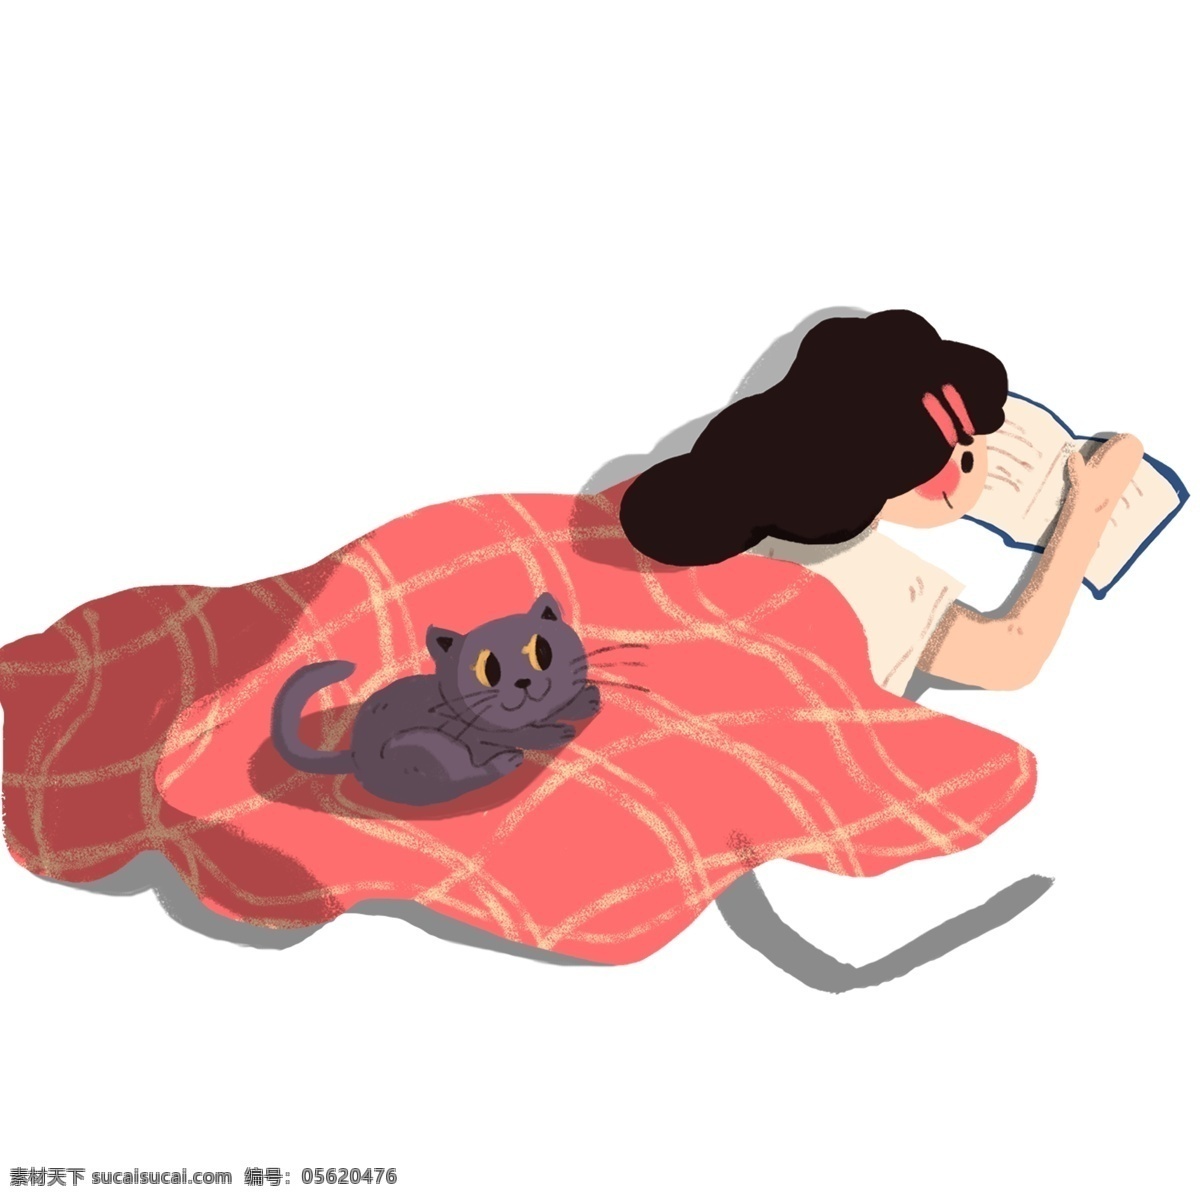 温馨 冬日 窝 沙发 上 趴 看书 女孩 人物 猫咪 插画 手绘 被窝 趴着